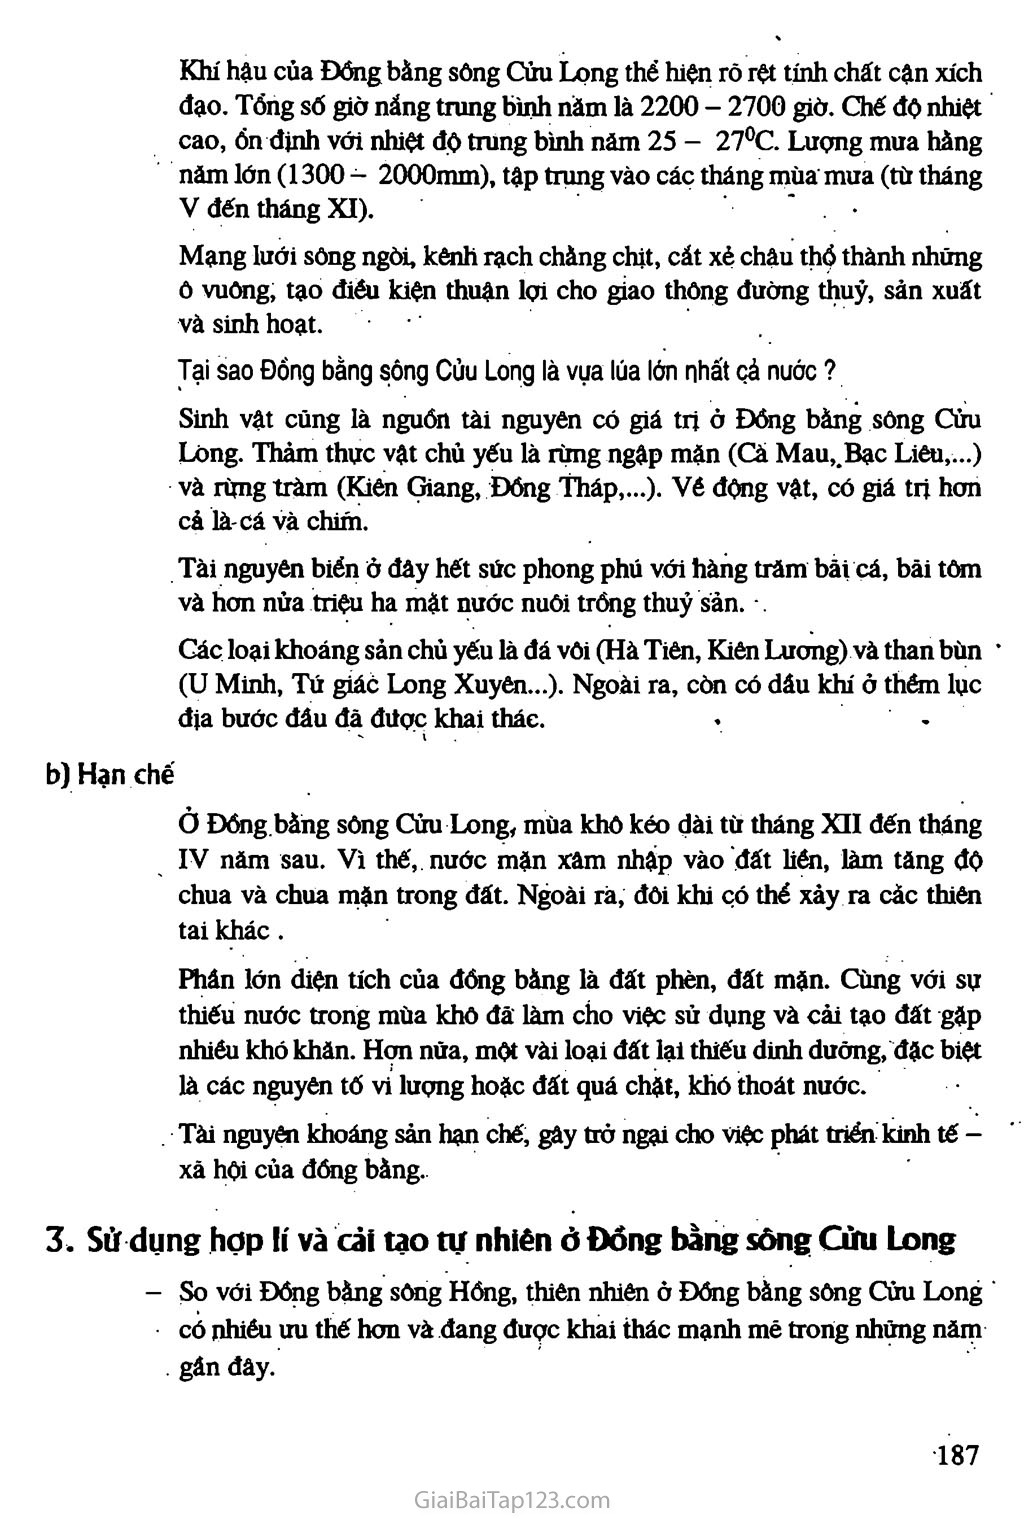 Bài 41. Vấn đề sử dụng hợp lí và cải tạo tự nhiên ở Đồng bằng sông Cửu Long trang 3